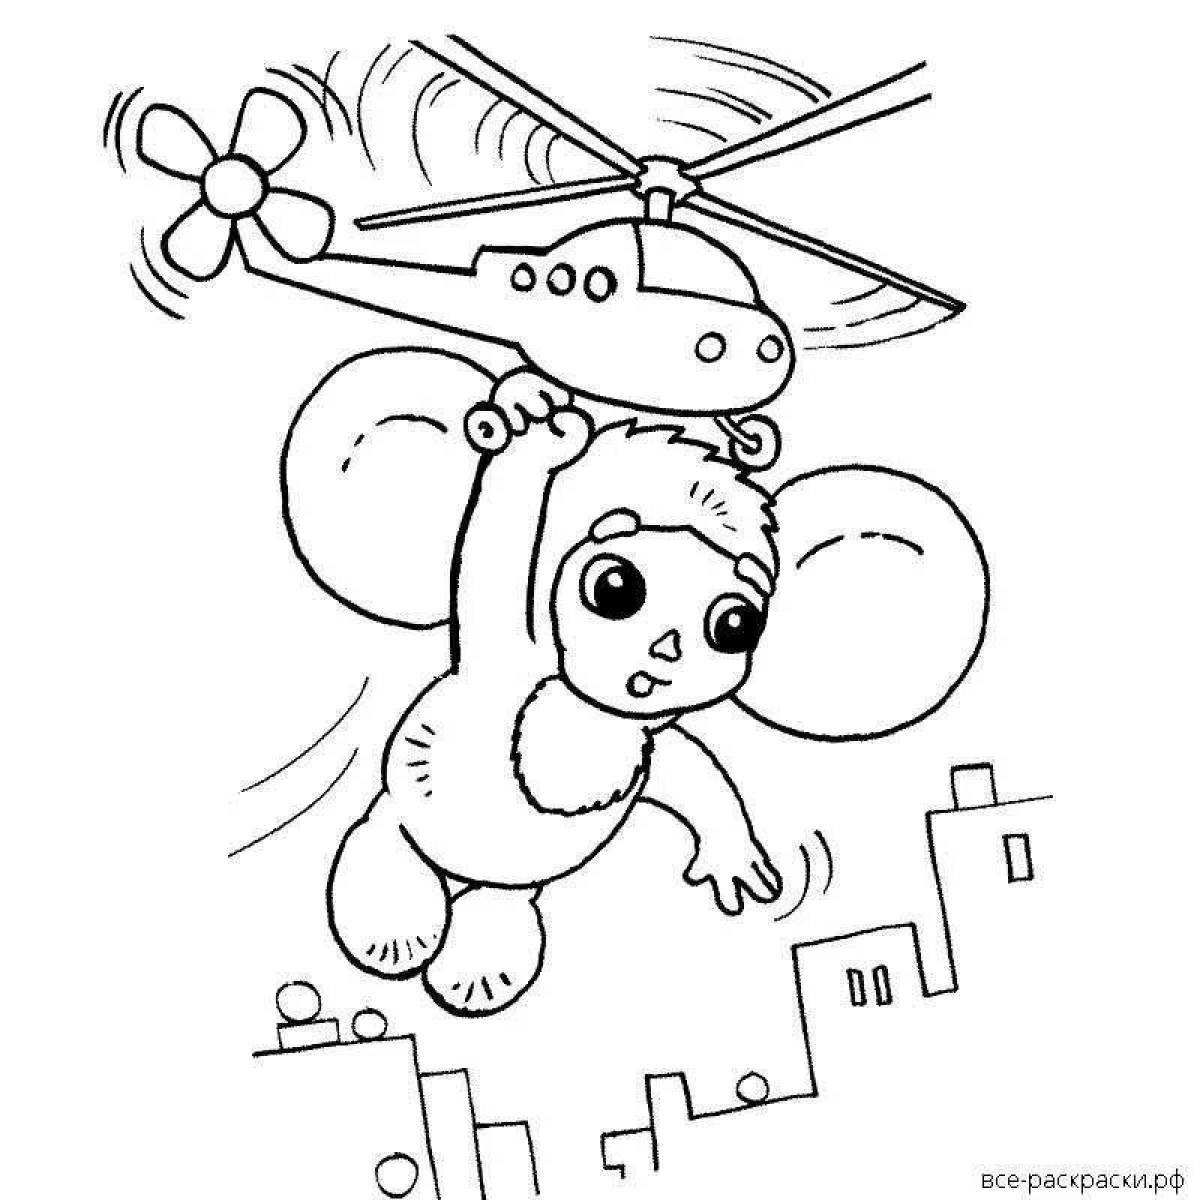 A striking drawing of Cheburashka